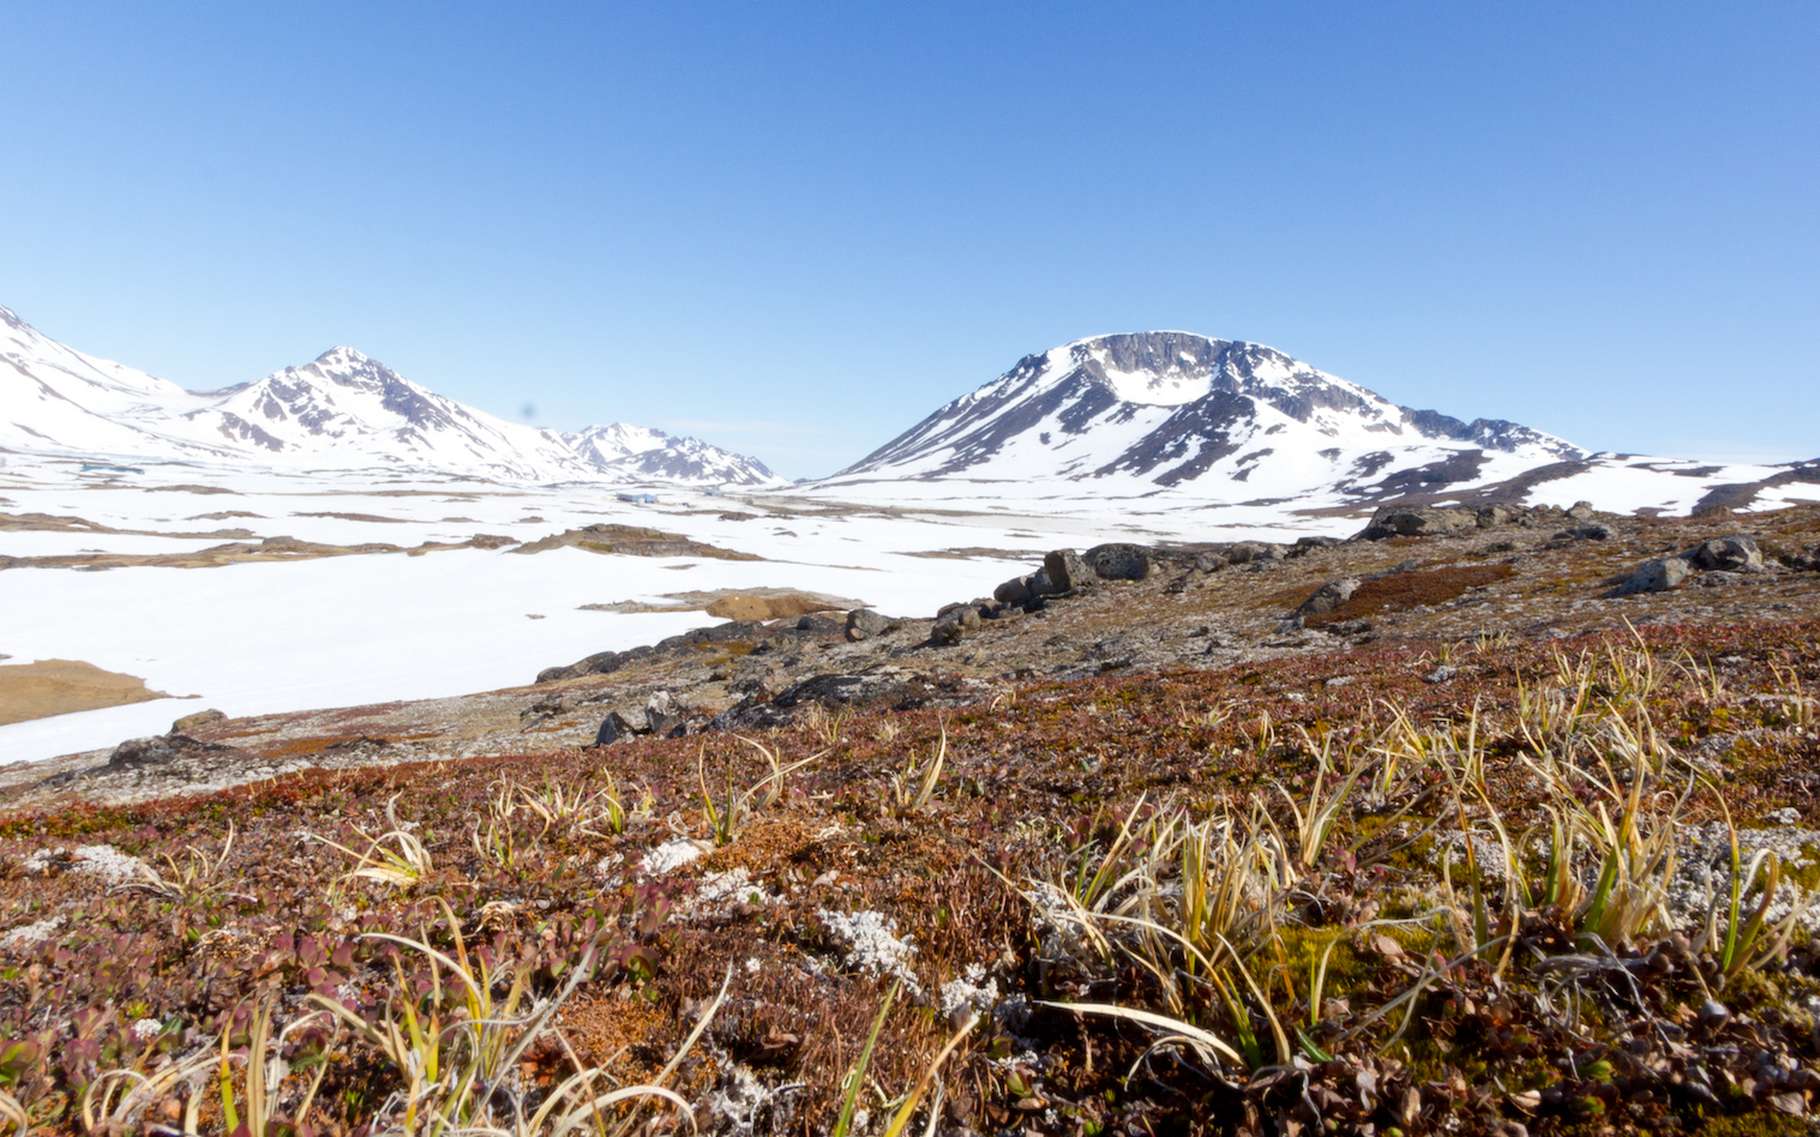 Le Groenland était sans glace il y a 400 000 ans : un avertissement pour notre futur